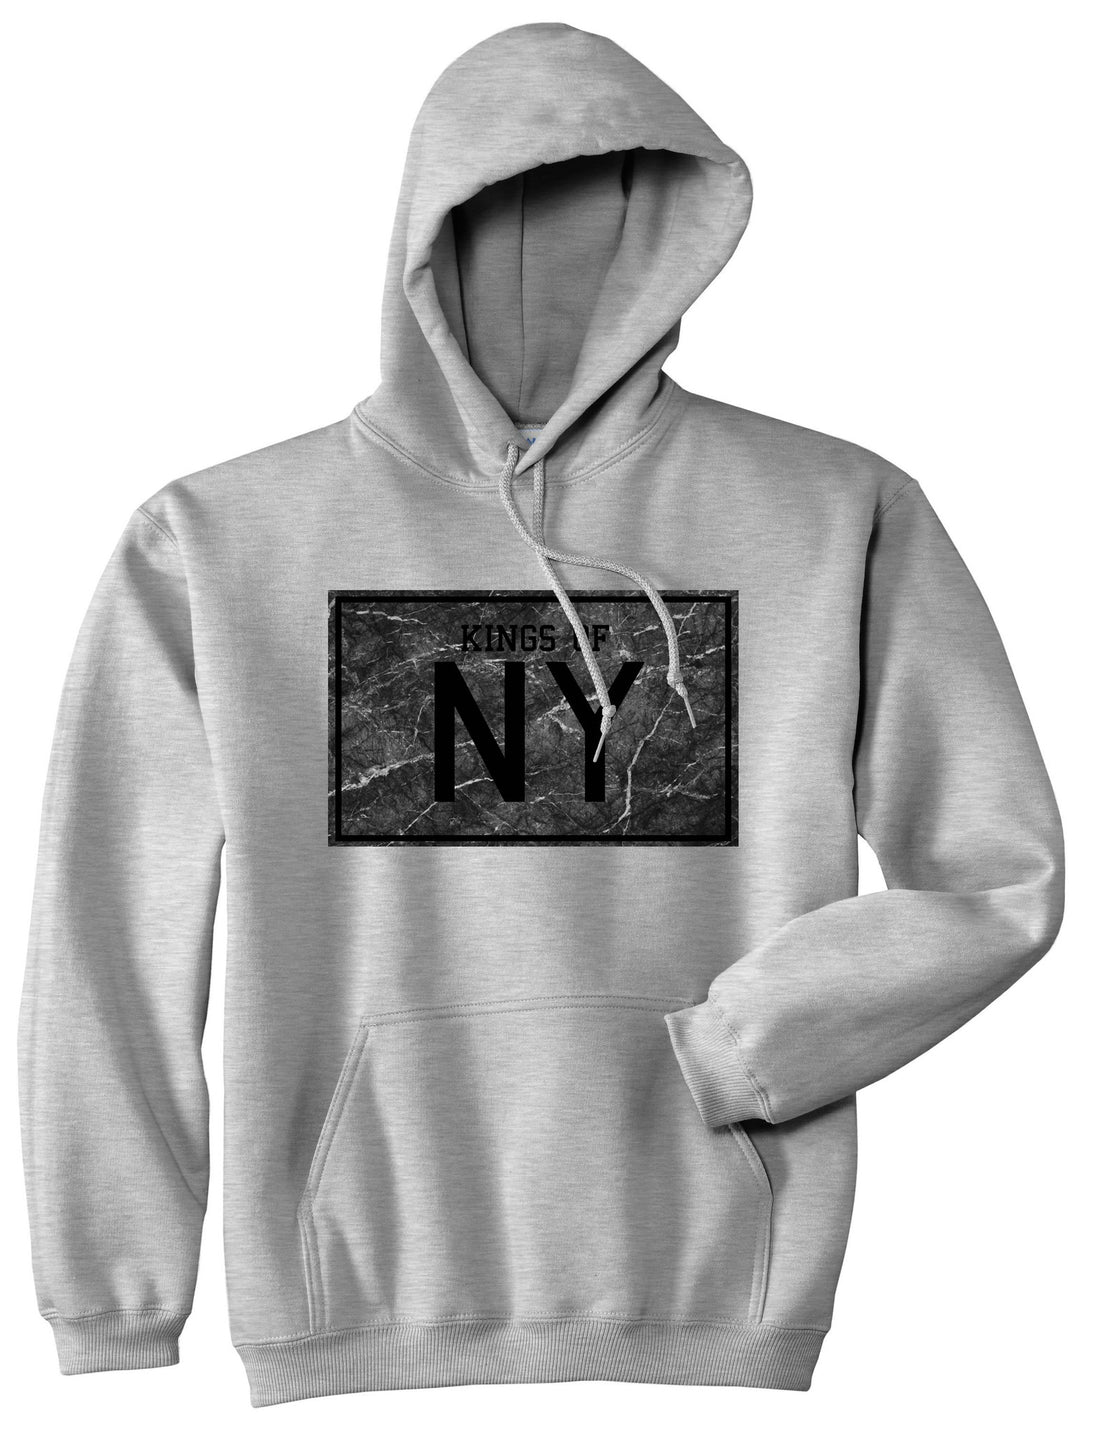 Granite NY Logo Print Boys Kids Pullover Hoodie Hoody in Grey by Kings Of NY